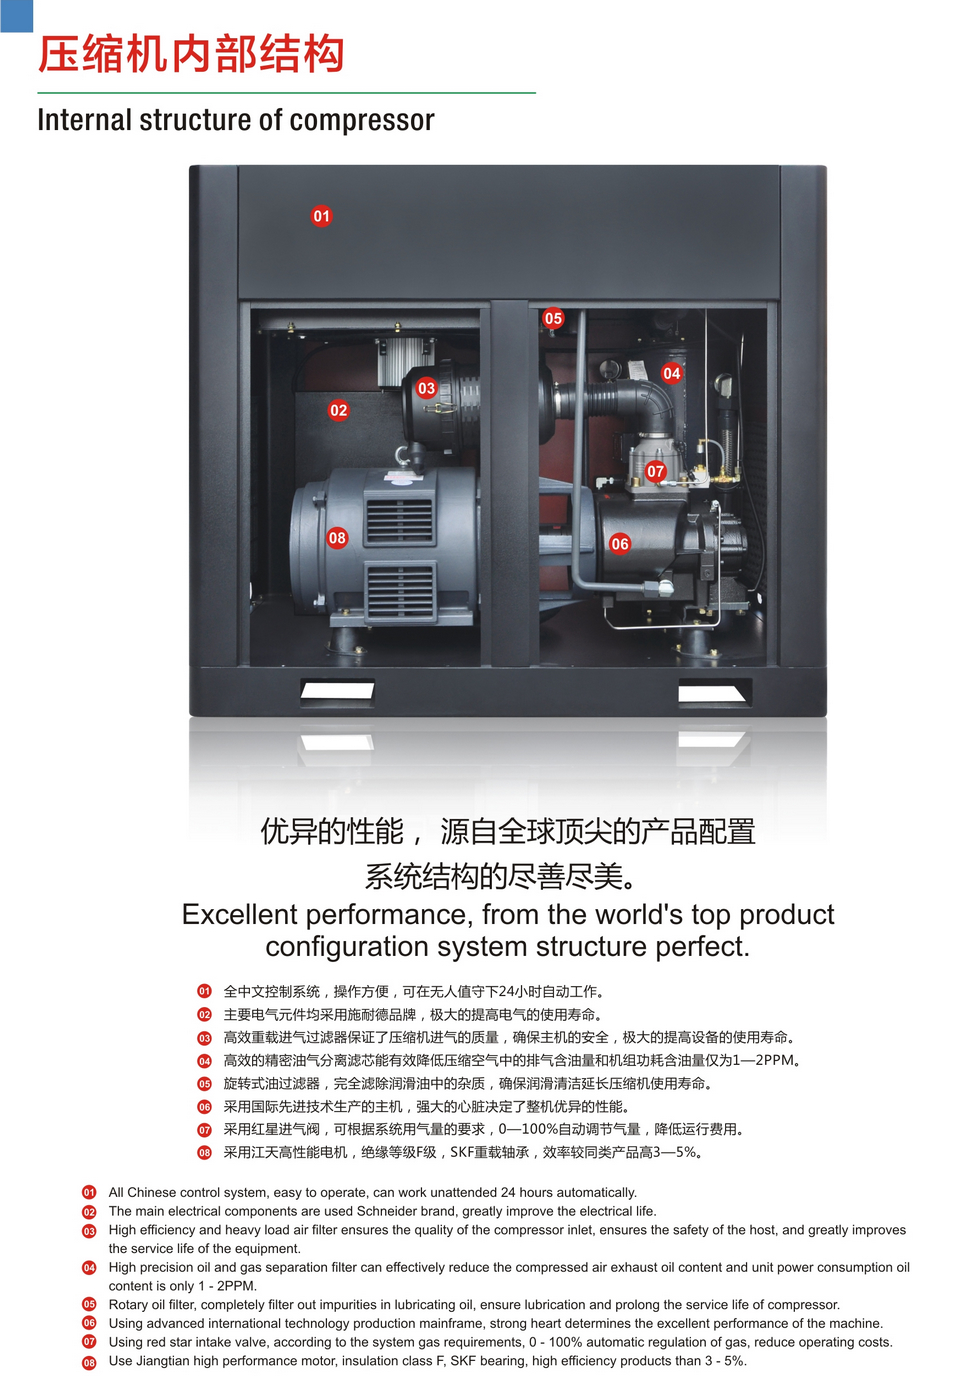 广东汉立精机压缩机内部结构图展示